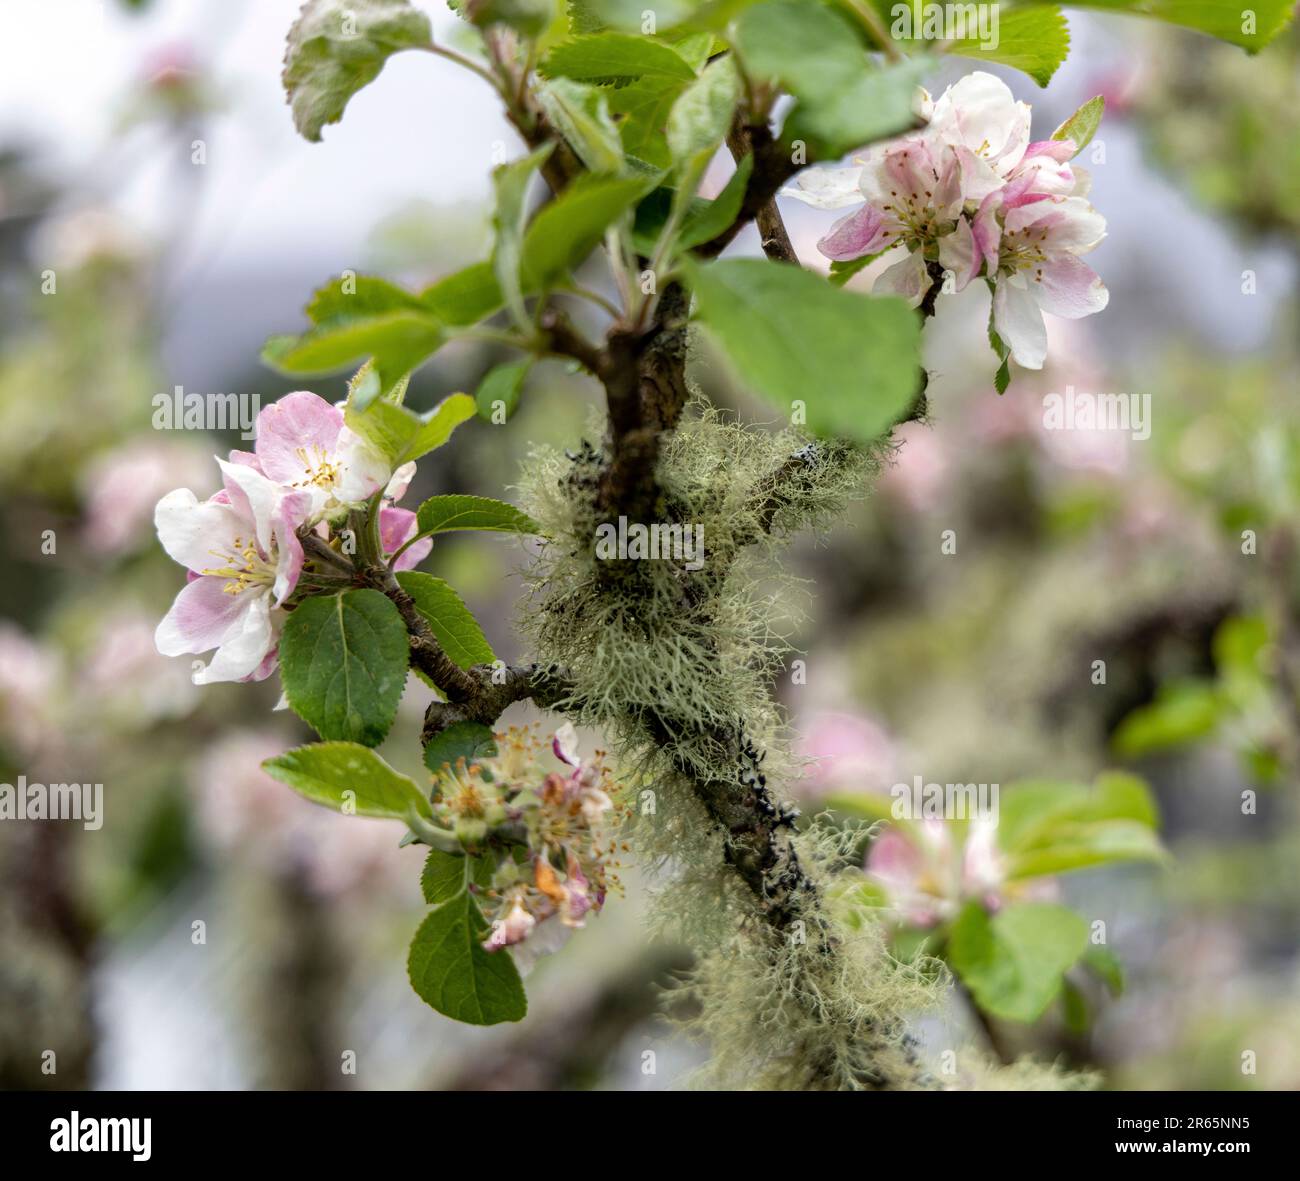 Árbol de manzana con flores blancas y de color rosa pastel cubiertas de musgo en el jardín amurallado del castillo de Glenveagh, Churchill, Co Donegal, República de Irlanda. Foto de stock